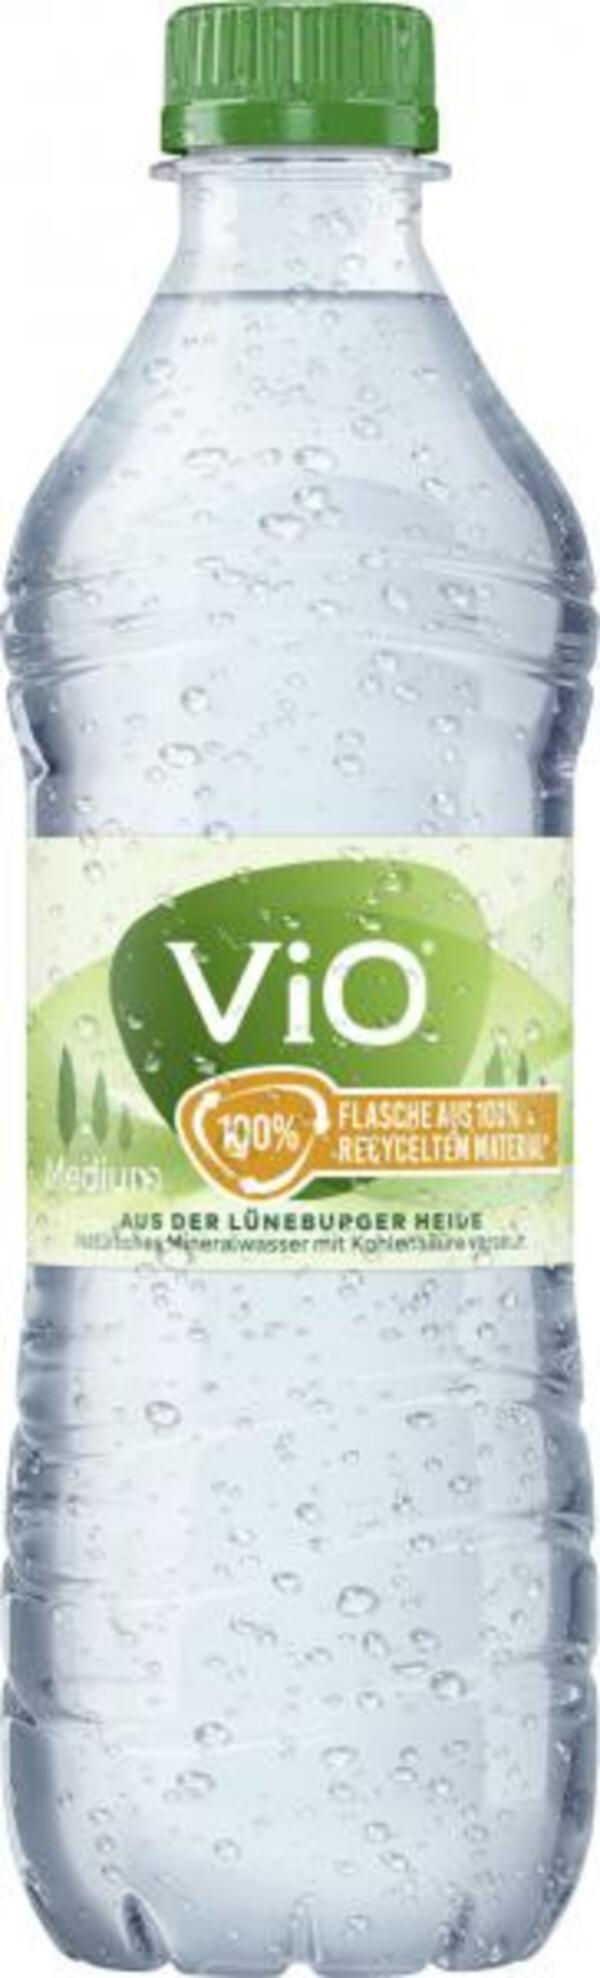 Bild 1 von Vio Mineralwasser medium (Einweg)